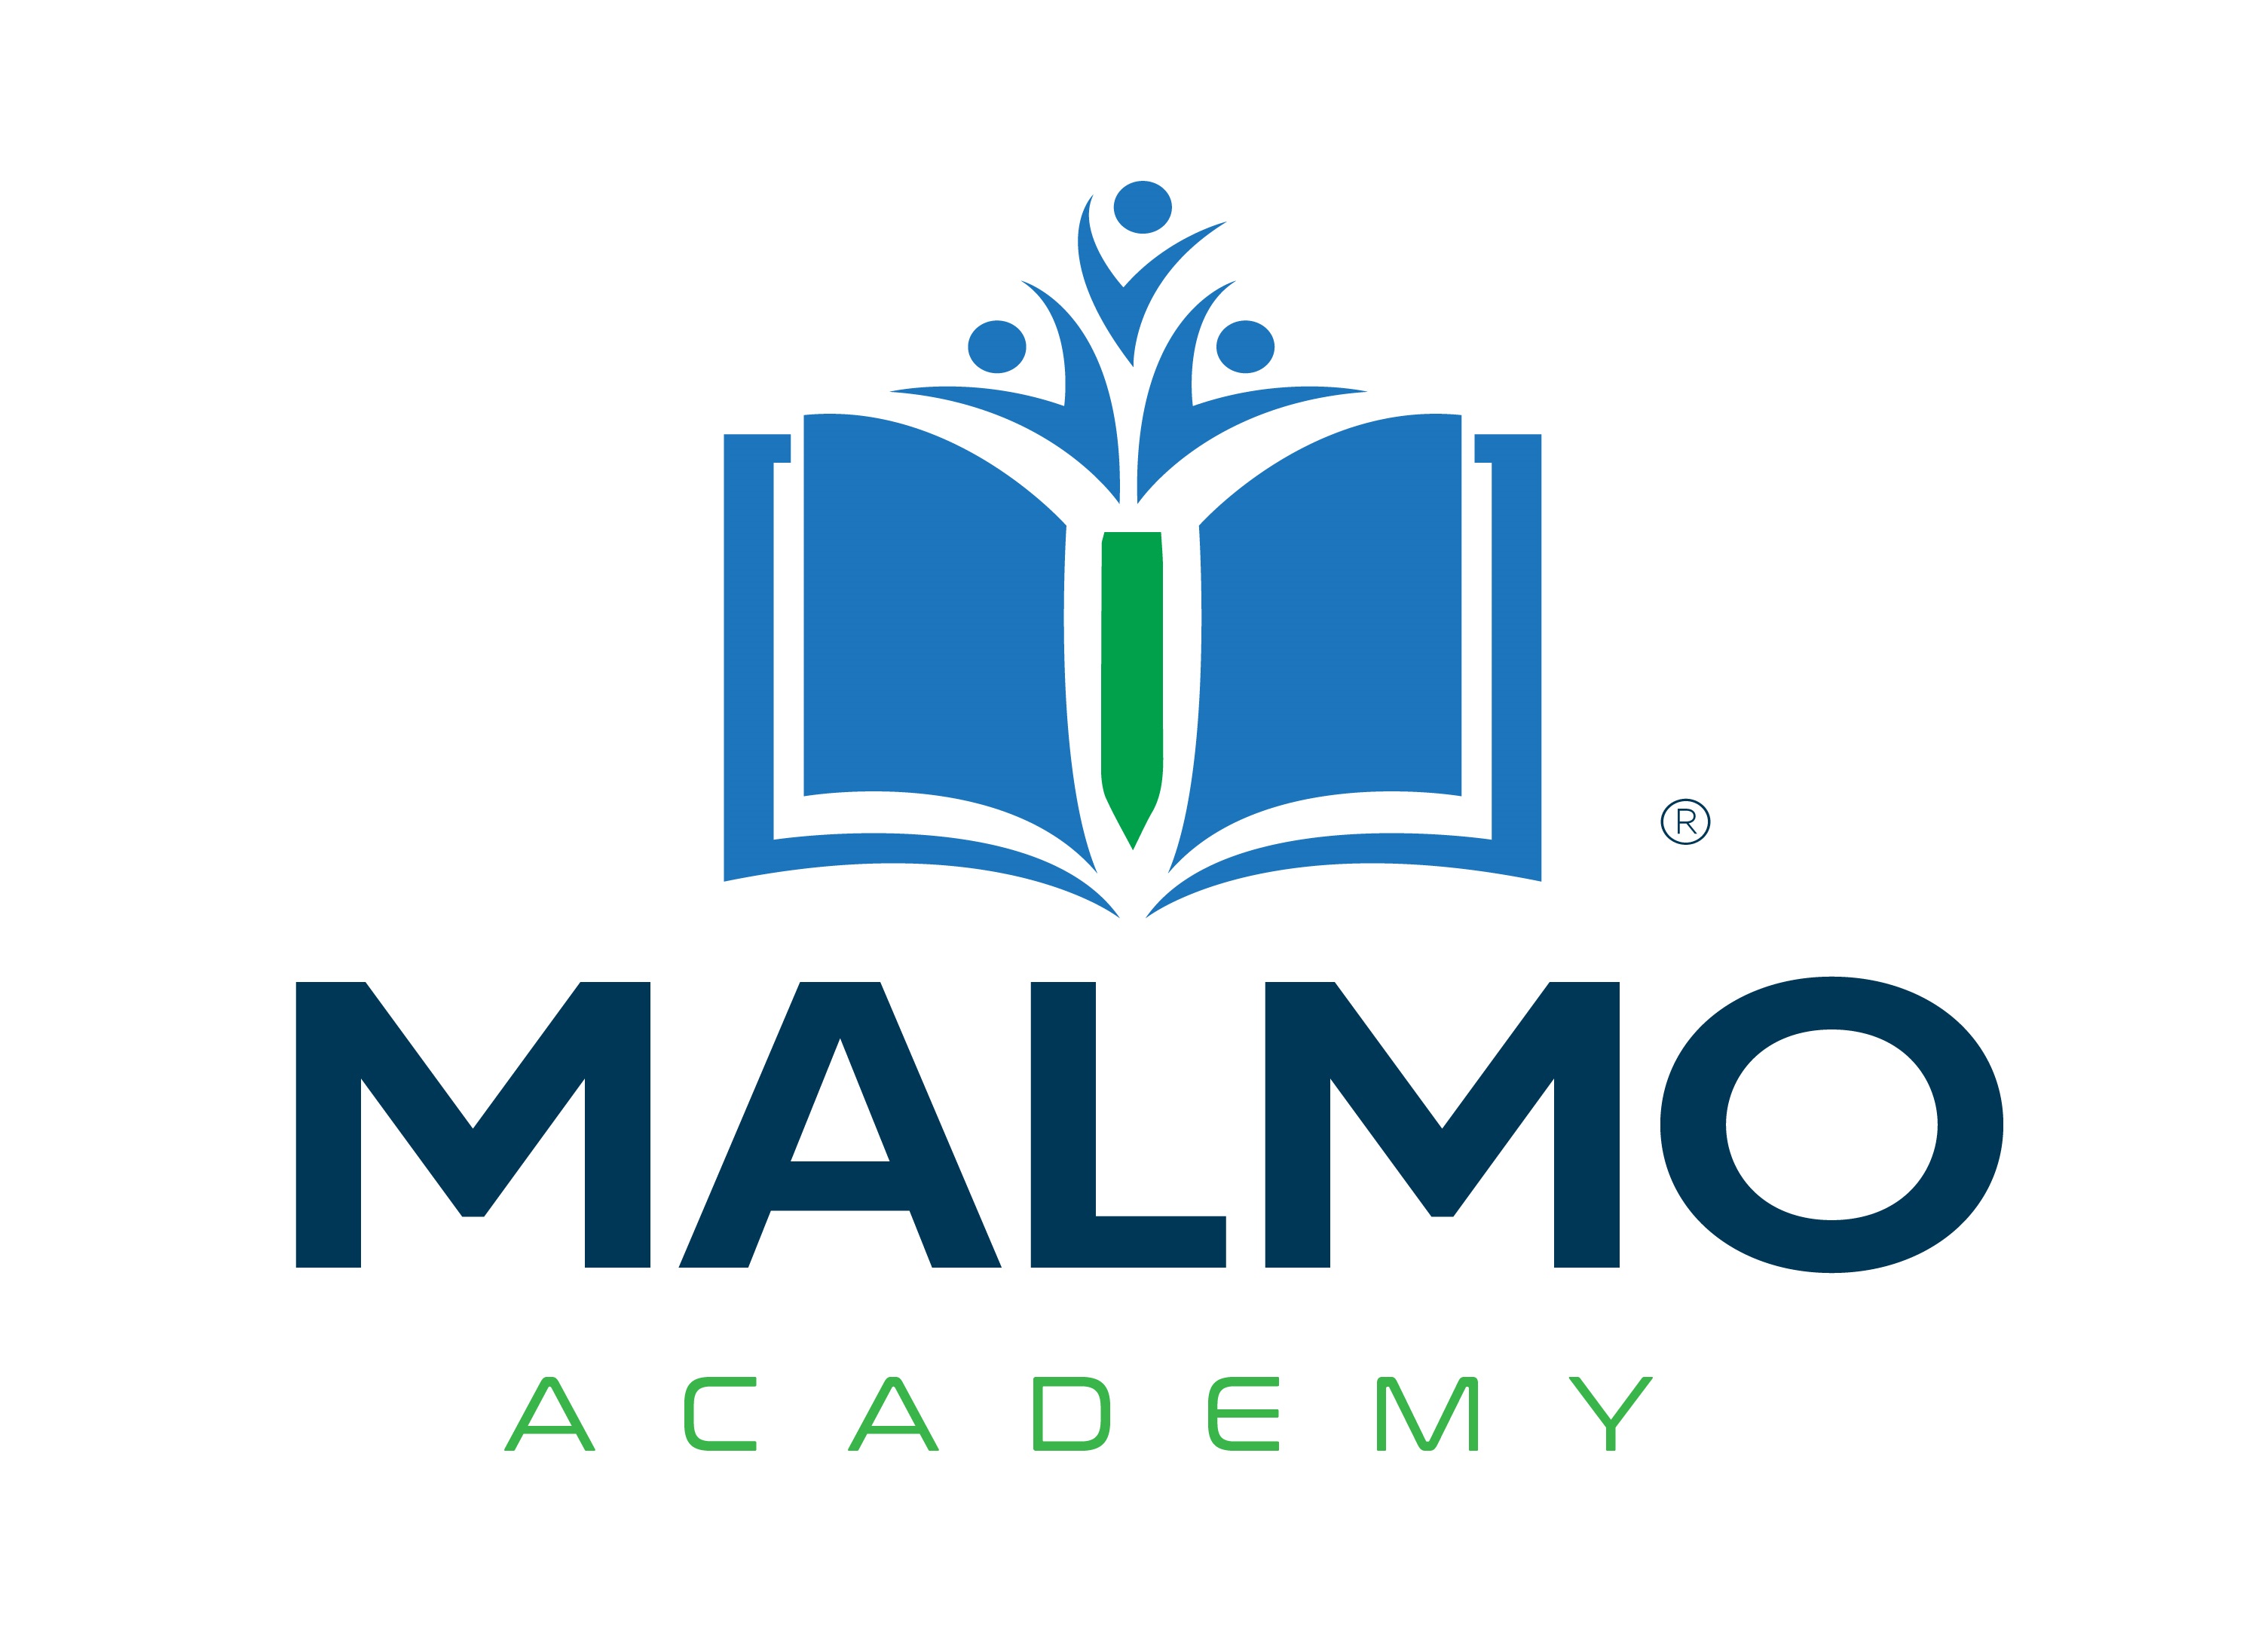 Malmo Academy